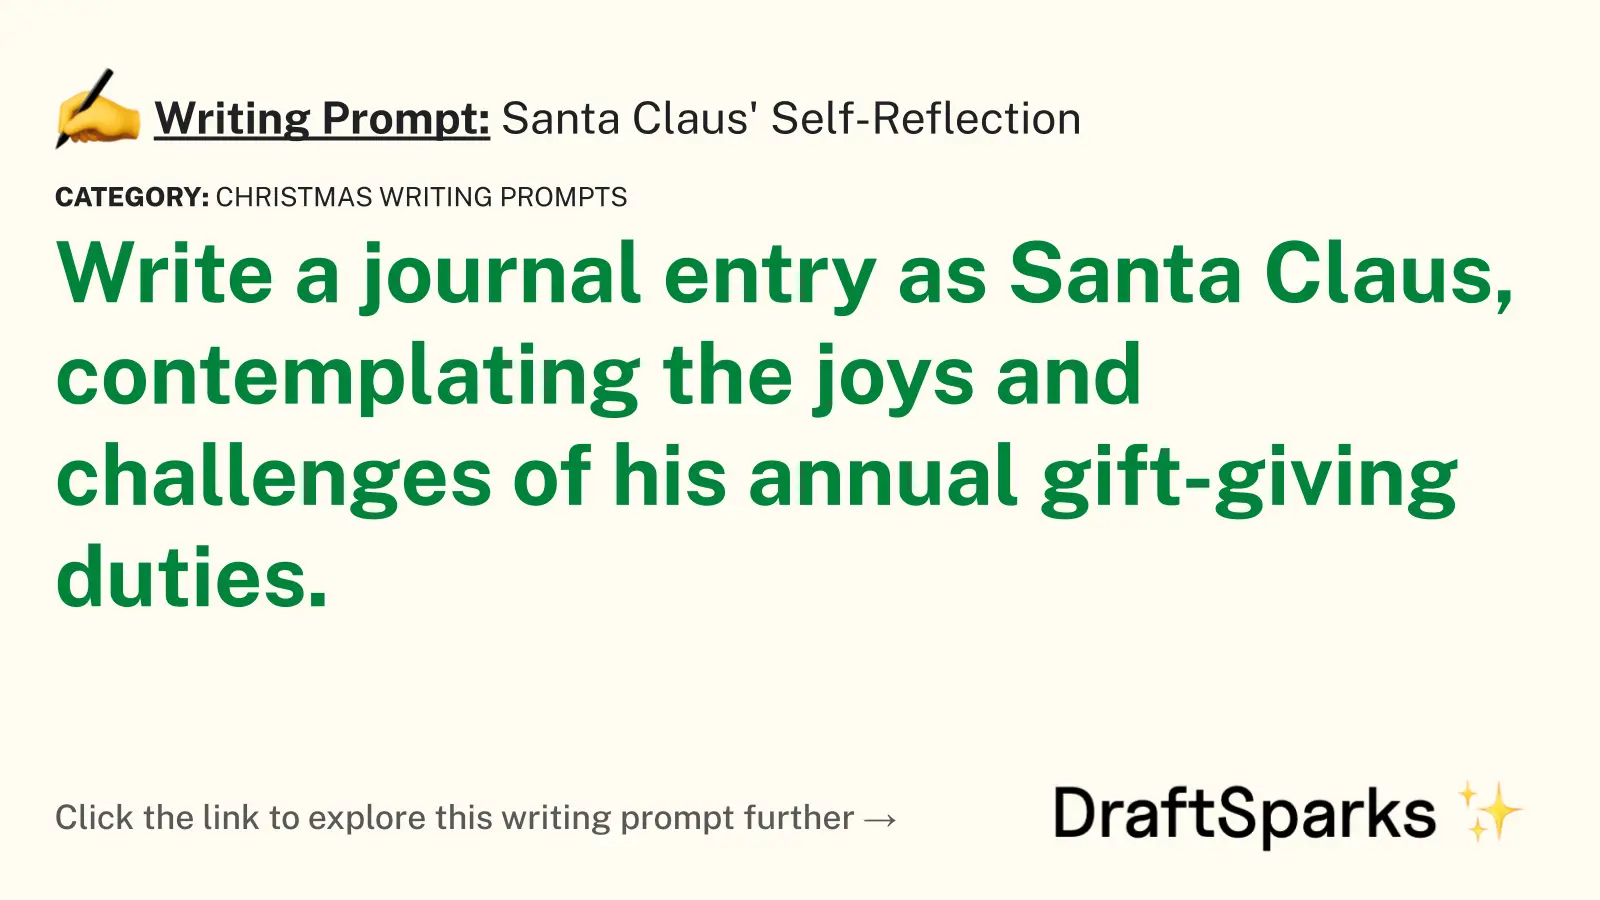 Santa Claus’ Self-Reflection